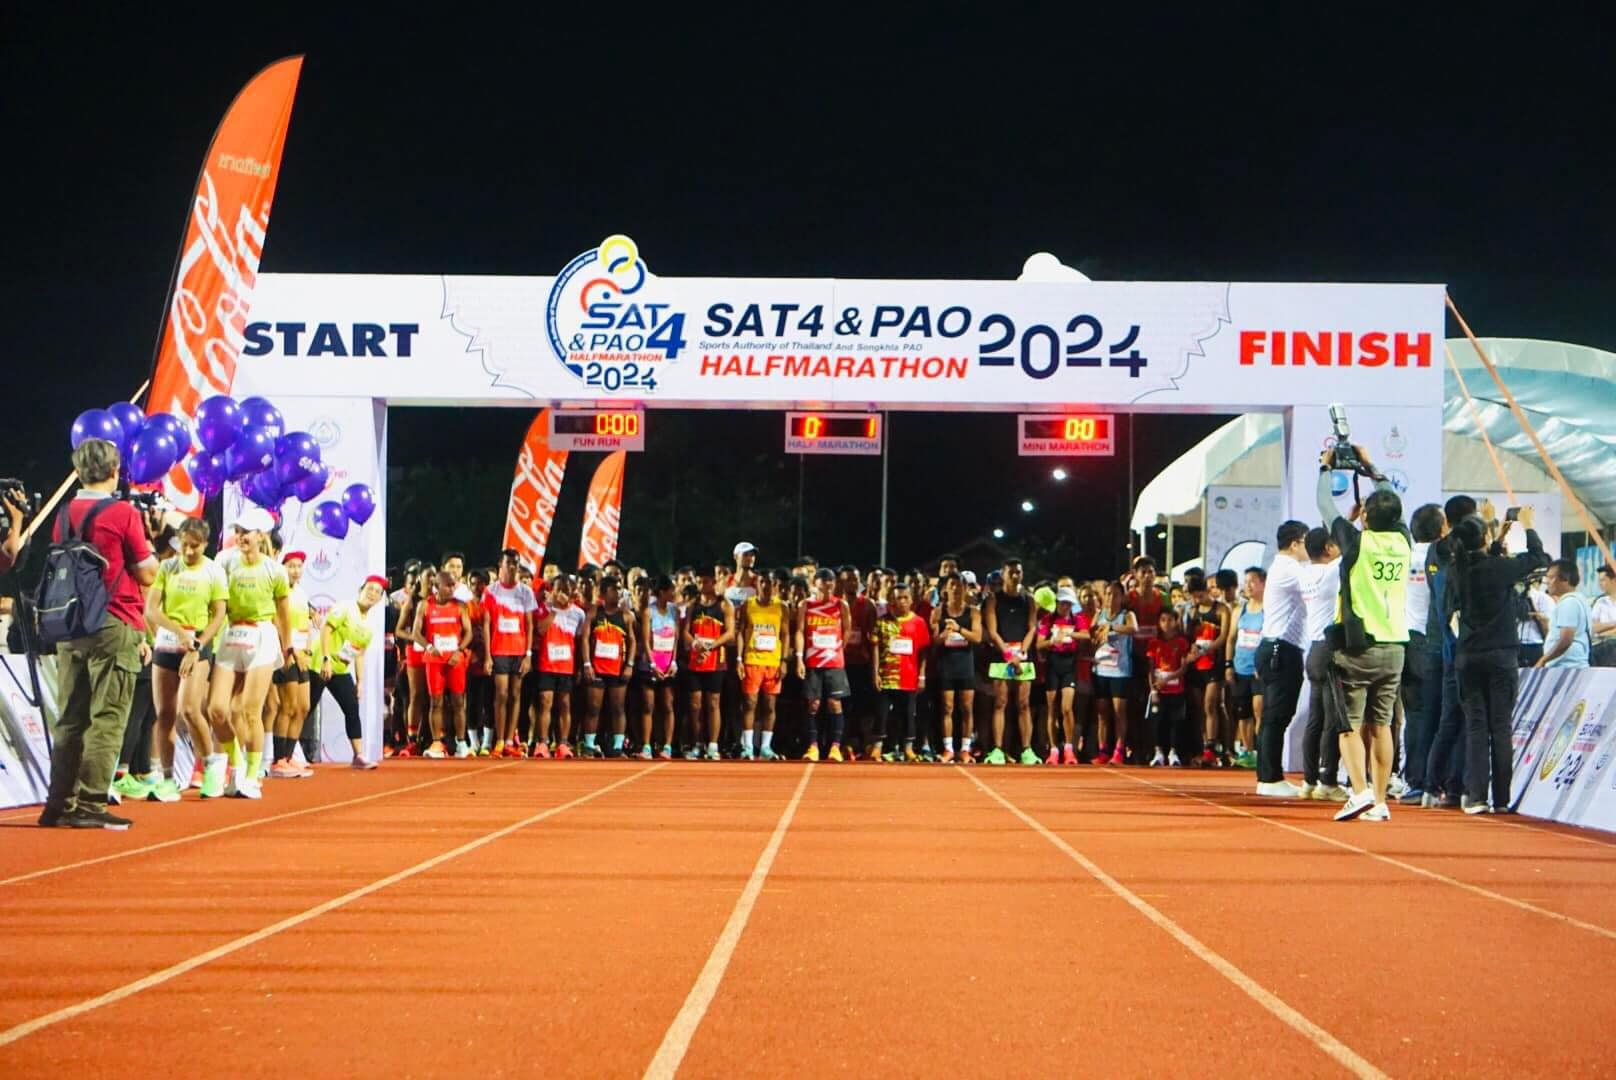 วิ่งมาราธอน นำรายได้ปรับปรุงสนาม พรุค้างคาว สำนักงานการกีฬาแห่งประเทศไทย จังหวัดสงขลา จัดกิจกรรม วิ่ง Sat 4 & Pao half Marathon 2024 ภาครัฐและเอกชน และชาวต่างชาติประเทศมาเลเซีย รวม 1,500 คน เพื่อนำรายได้ทั้งหมดมาปรับปรุงสนามกีฬาเมืองหลักภาคใต้พรุค้างคาว